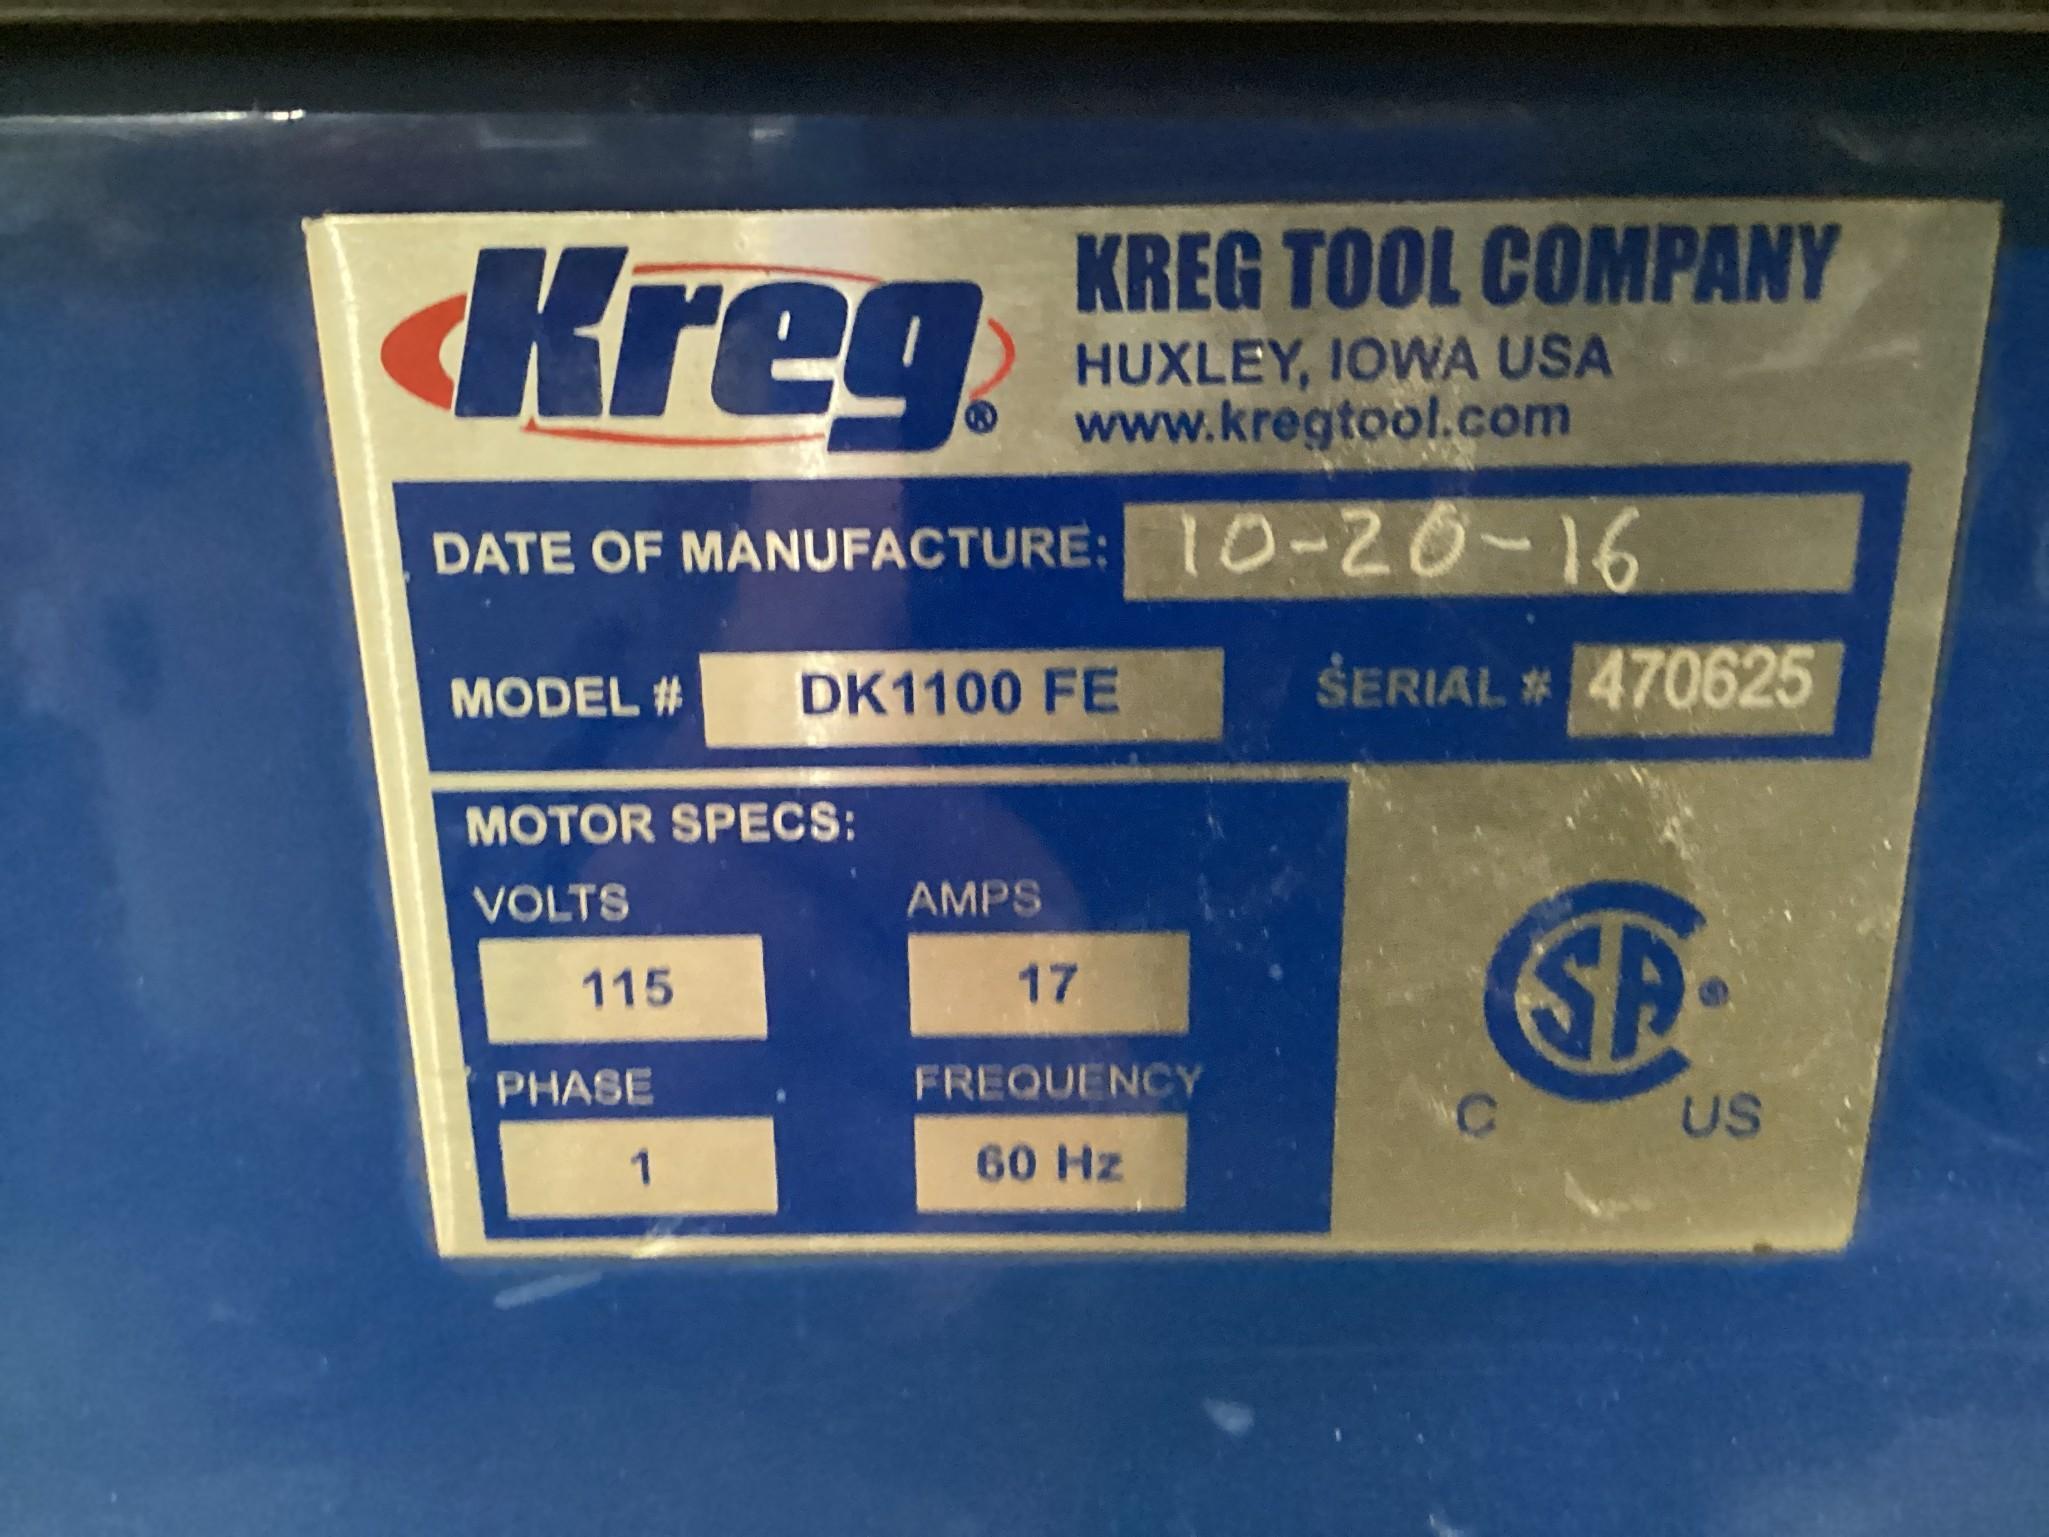 Kreg DK1100 FE Pocket Hole Machine, 115 Volt, In Excellent Working Condition